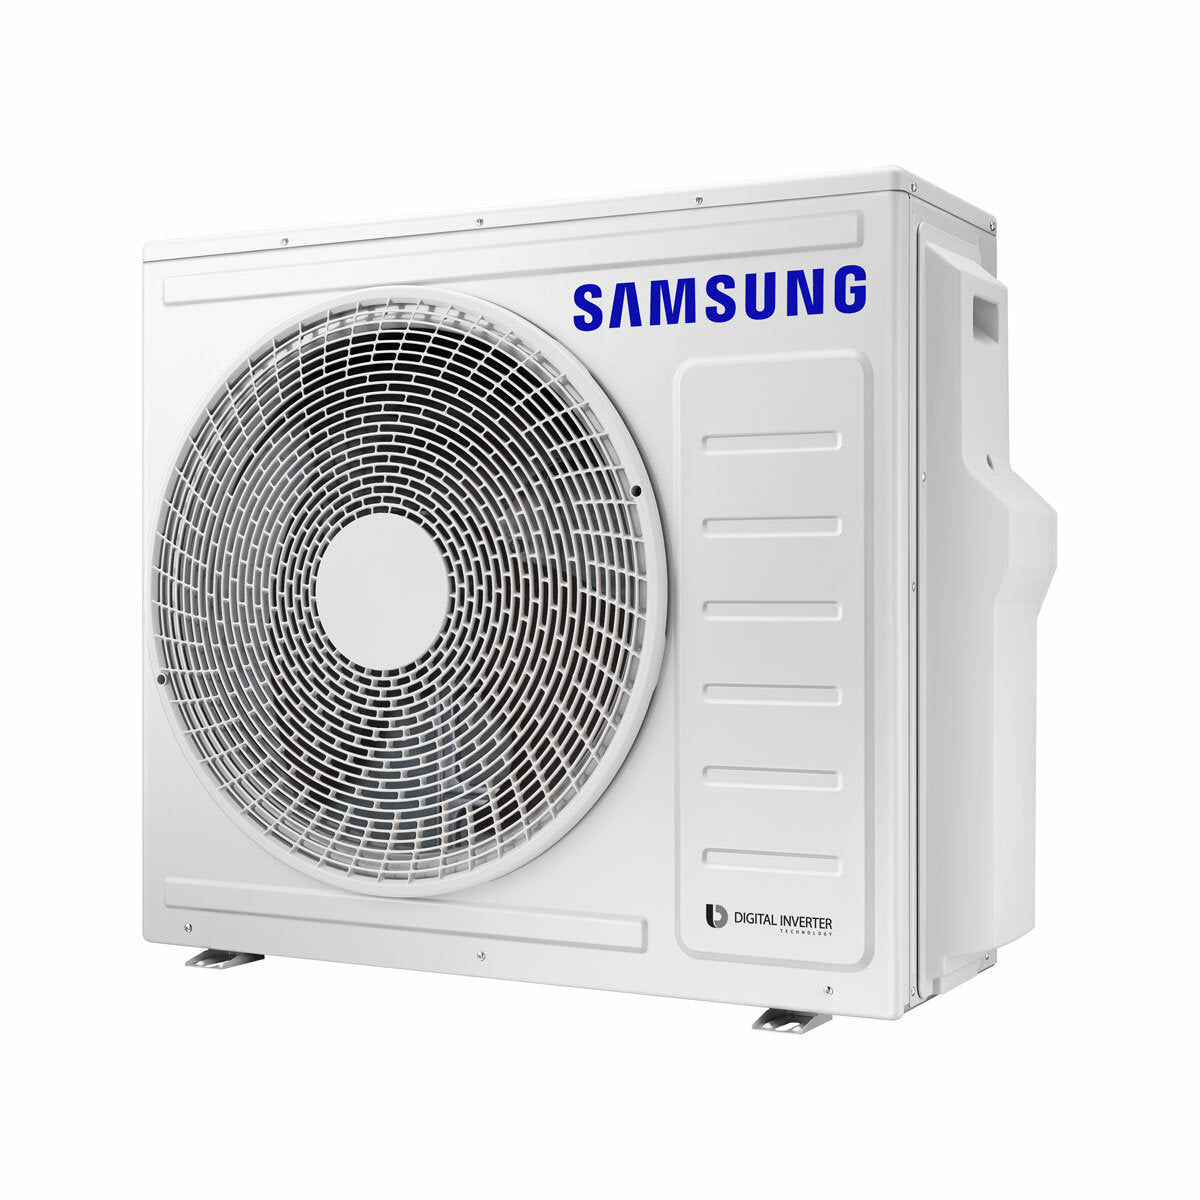 Samsung Cebu Wi-Fi Trial Split Klimaanlage 7000 + 9000 + 12000 BTU Wechselrichter A++ WLAN Außengerät 6,8 kW